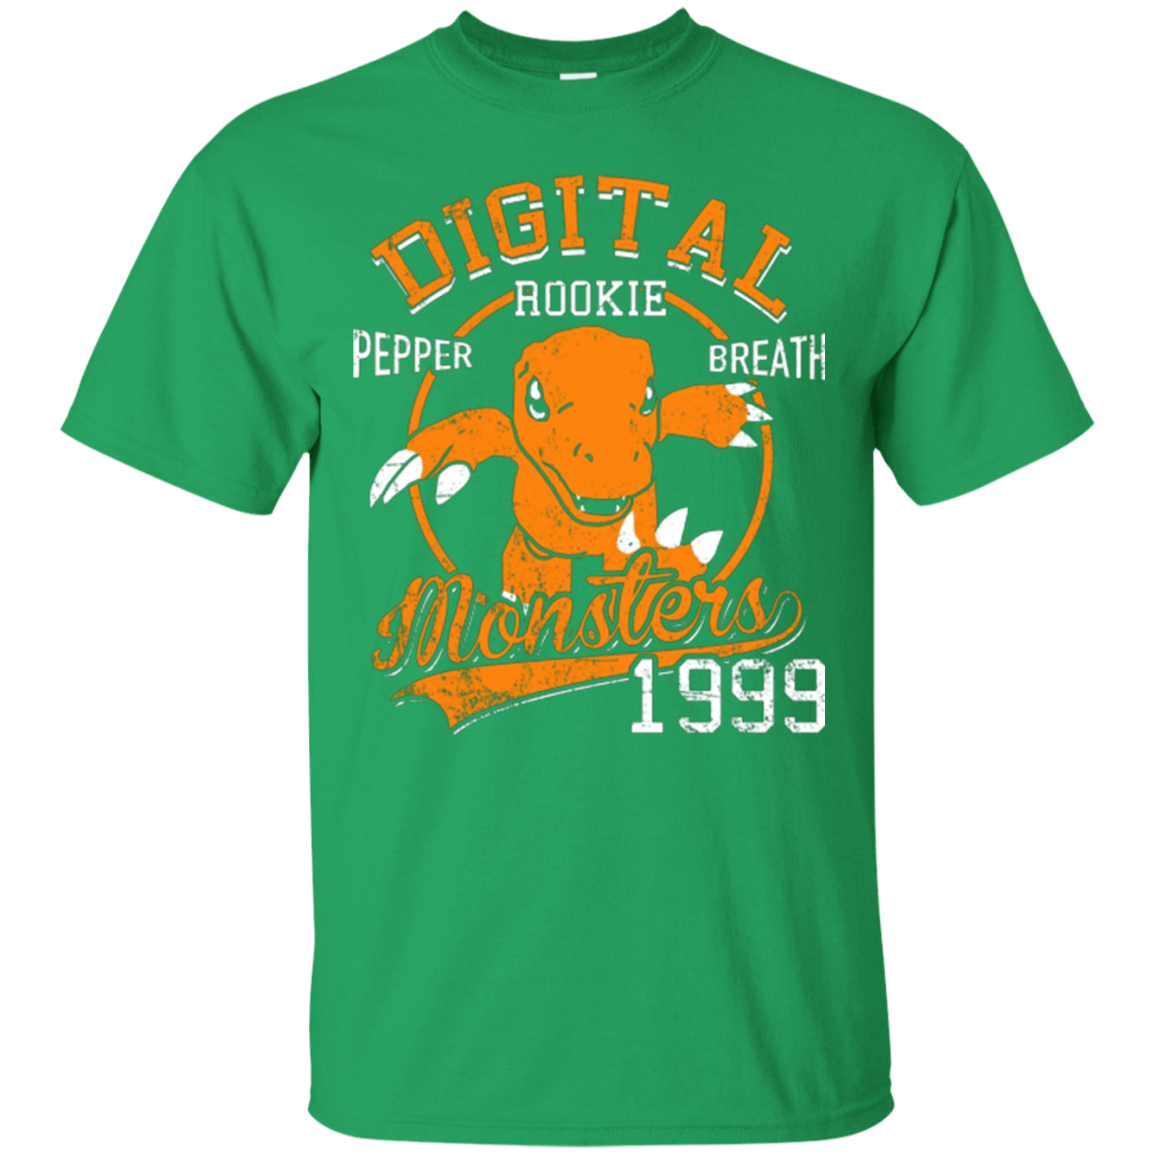 T-Shirts Irish Green / Small Pepper Breath T-Shirt